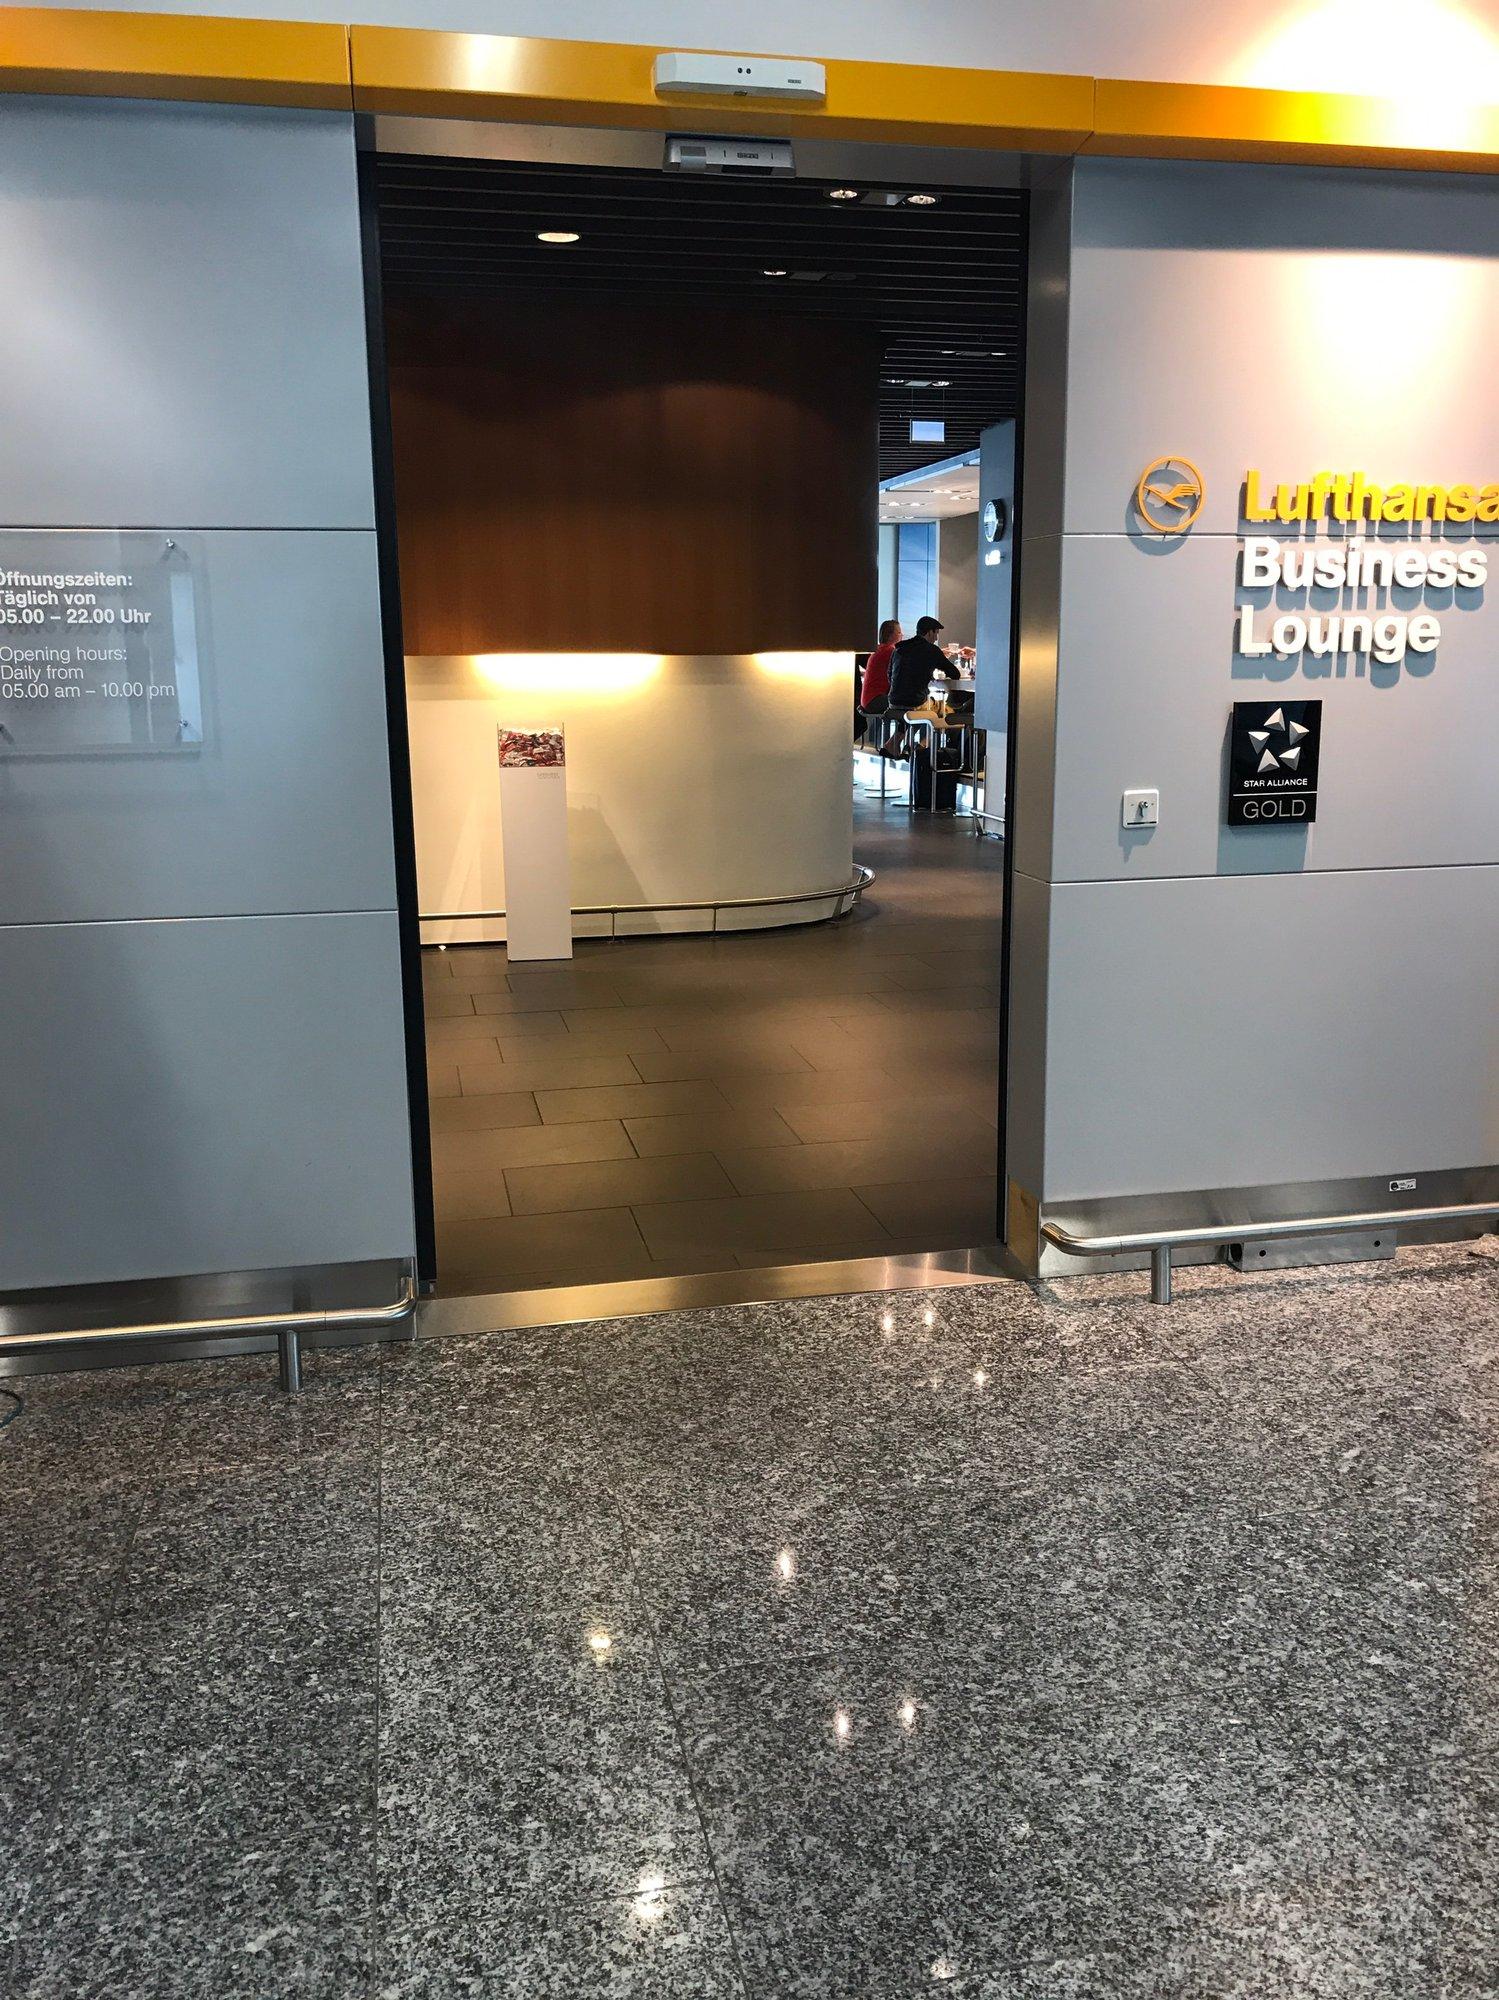 Lufthansa Business Lounge (Schengen, Gate A26) image 22 of 28